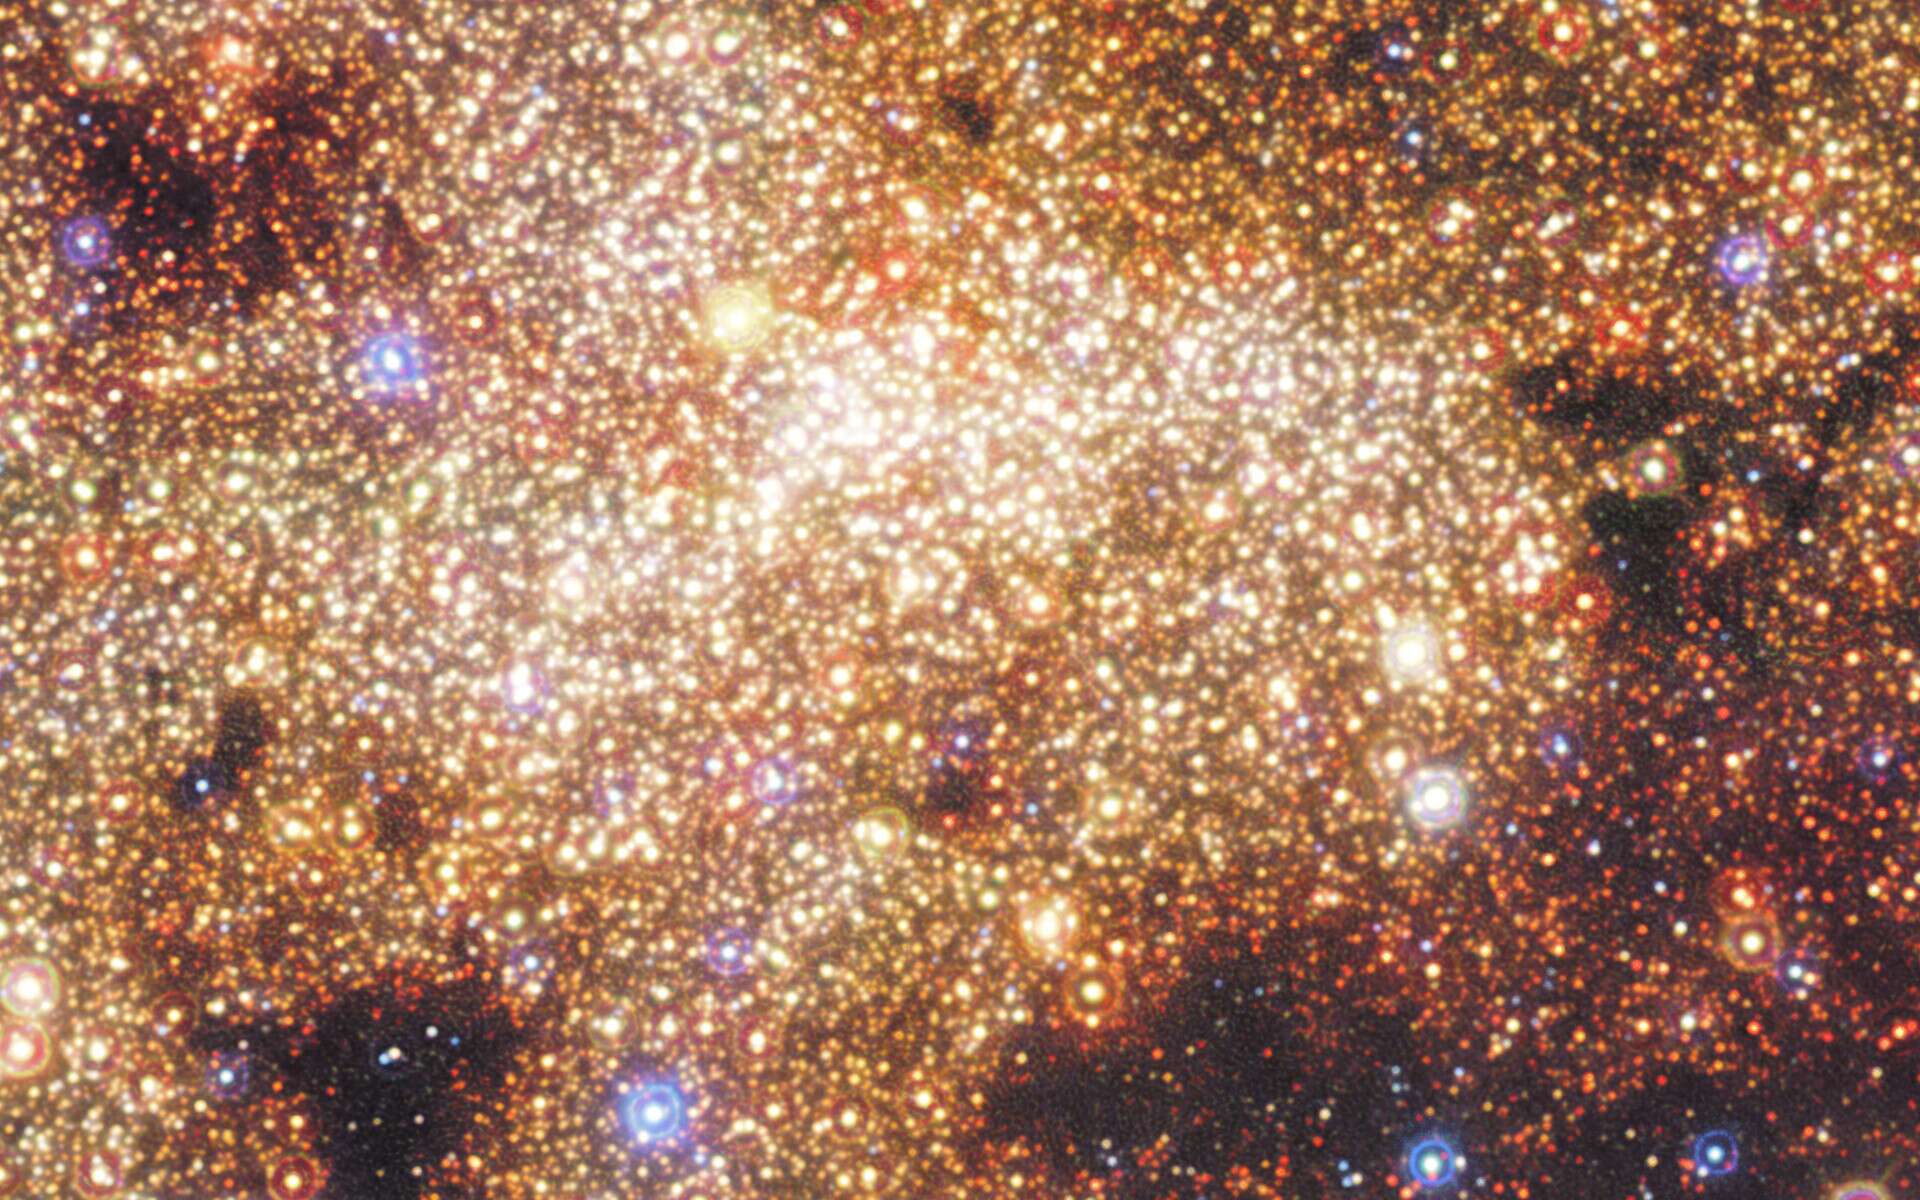 Il y a un milliard d’années, le centre de notre Voie lactée a connu une période d’intense activité. Une flambée de formation stellaire semblable à celle qui se produit dans les galaxies les plus brillantes de notre univers. © Nogueras-Lara et al., ESO